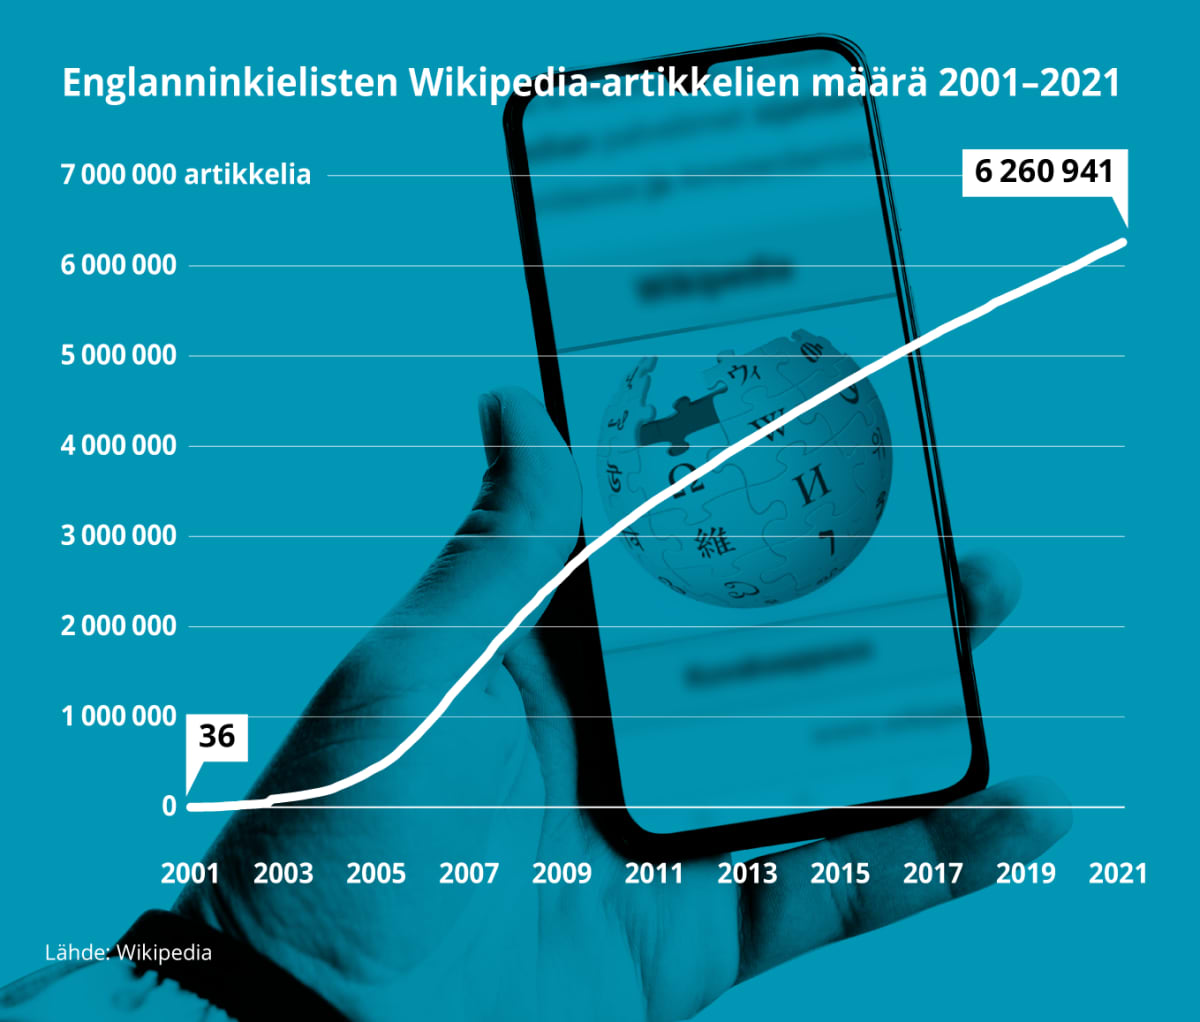 Grafiikka näyttää englanninkielisten Wikipedia-artikkelien määrän kasvun 2001-2021. Vuoden 2001 alussa artikkeleita 0li 36, vuonna 2021 niitä on lähes 6,3 miljoonaa.